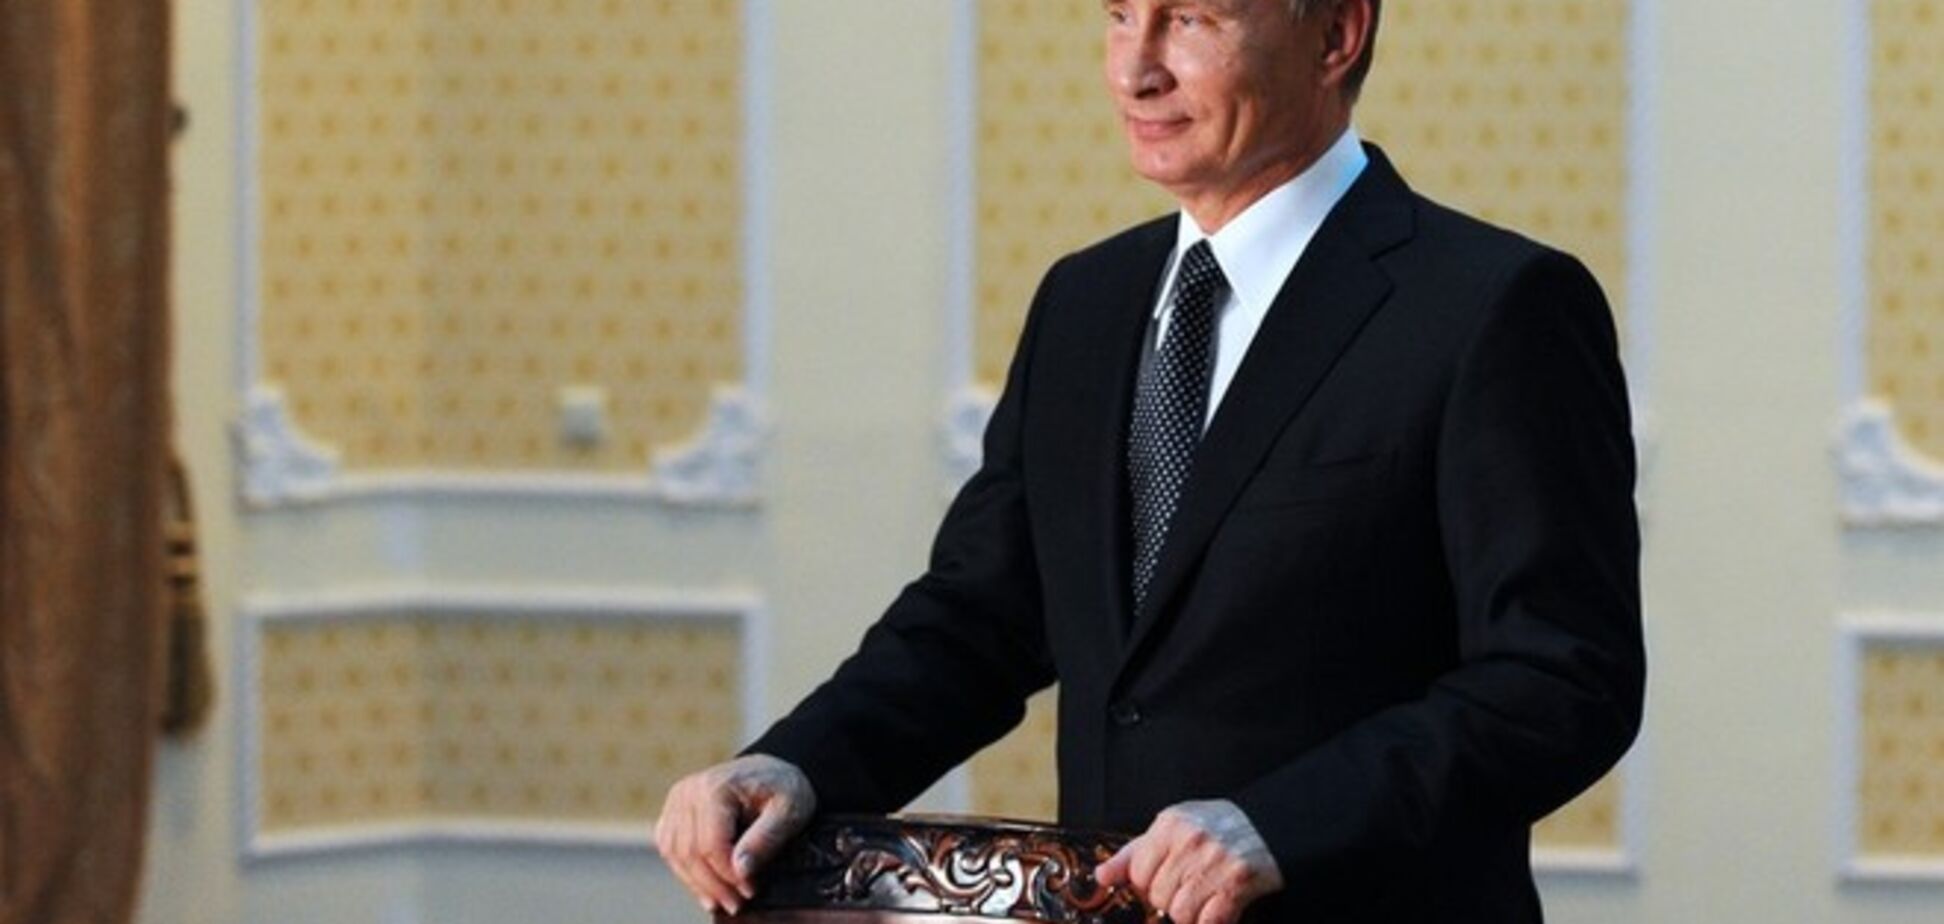 Книги о 'великом Путине' вызвали фурор в Китае - WSJ